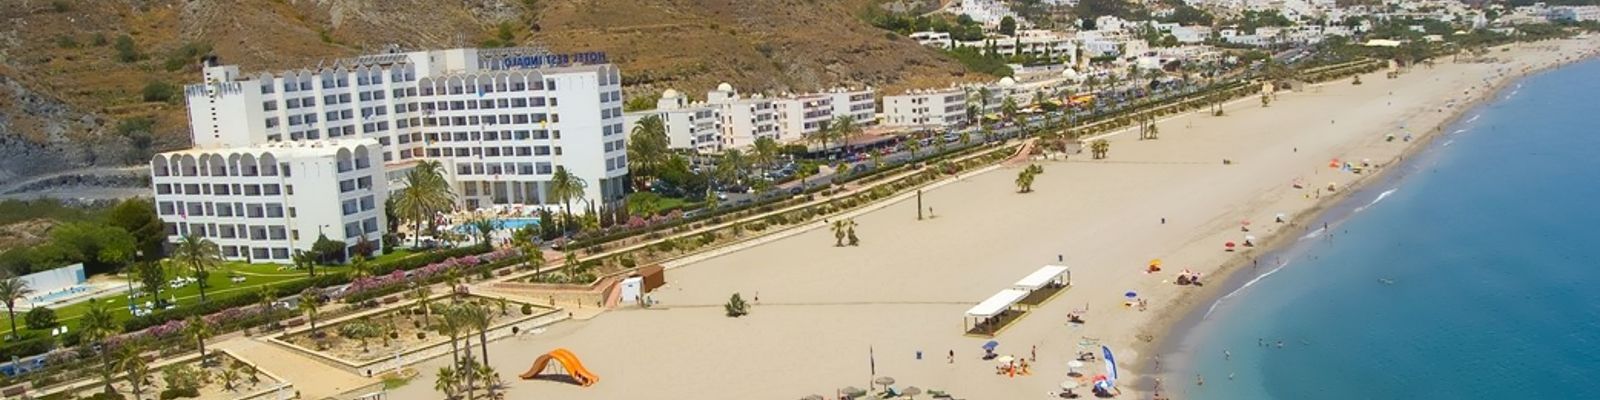 Oferta Hotel Best Indalo Mojácar Todo Incluido para verano 2023 (Mojacar - ALMERIA)